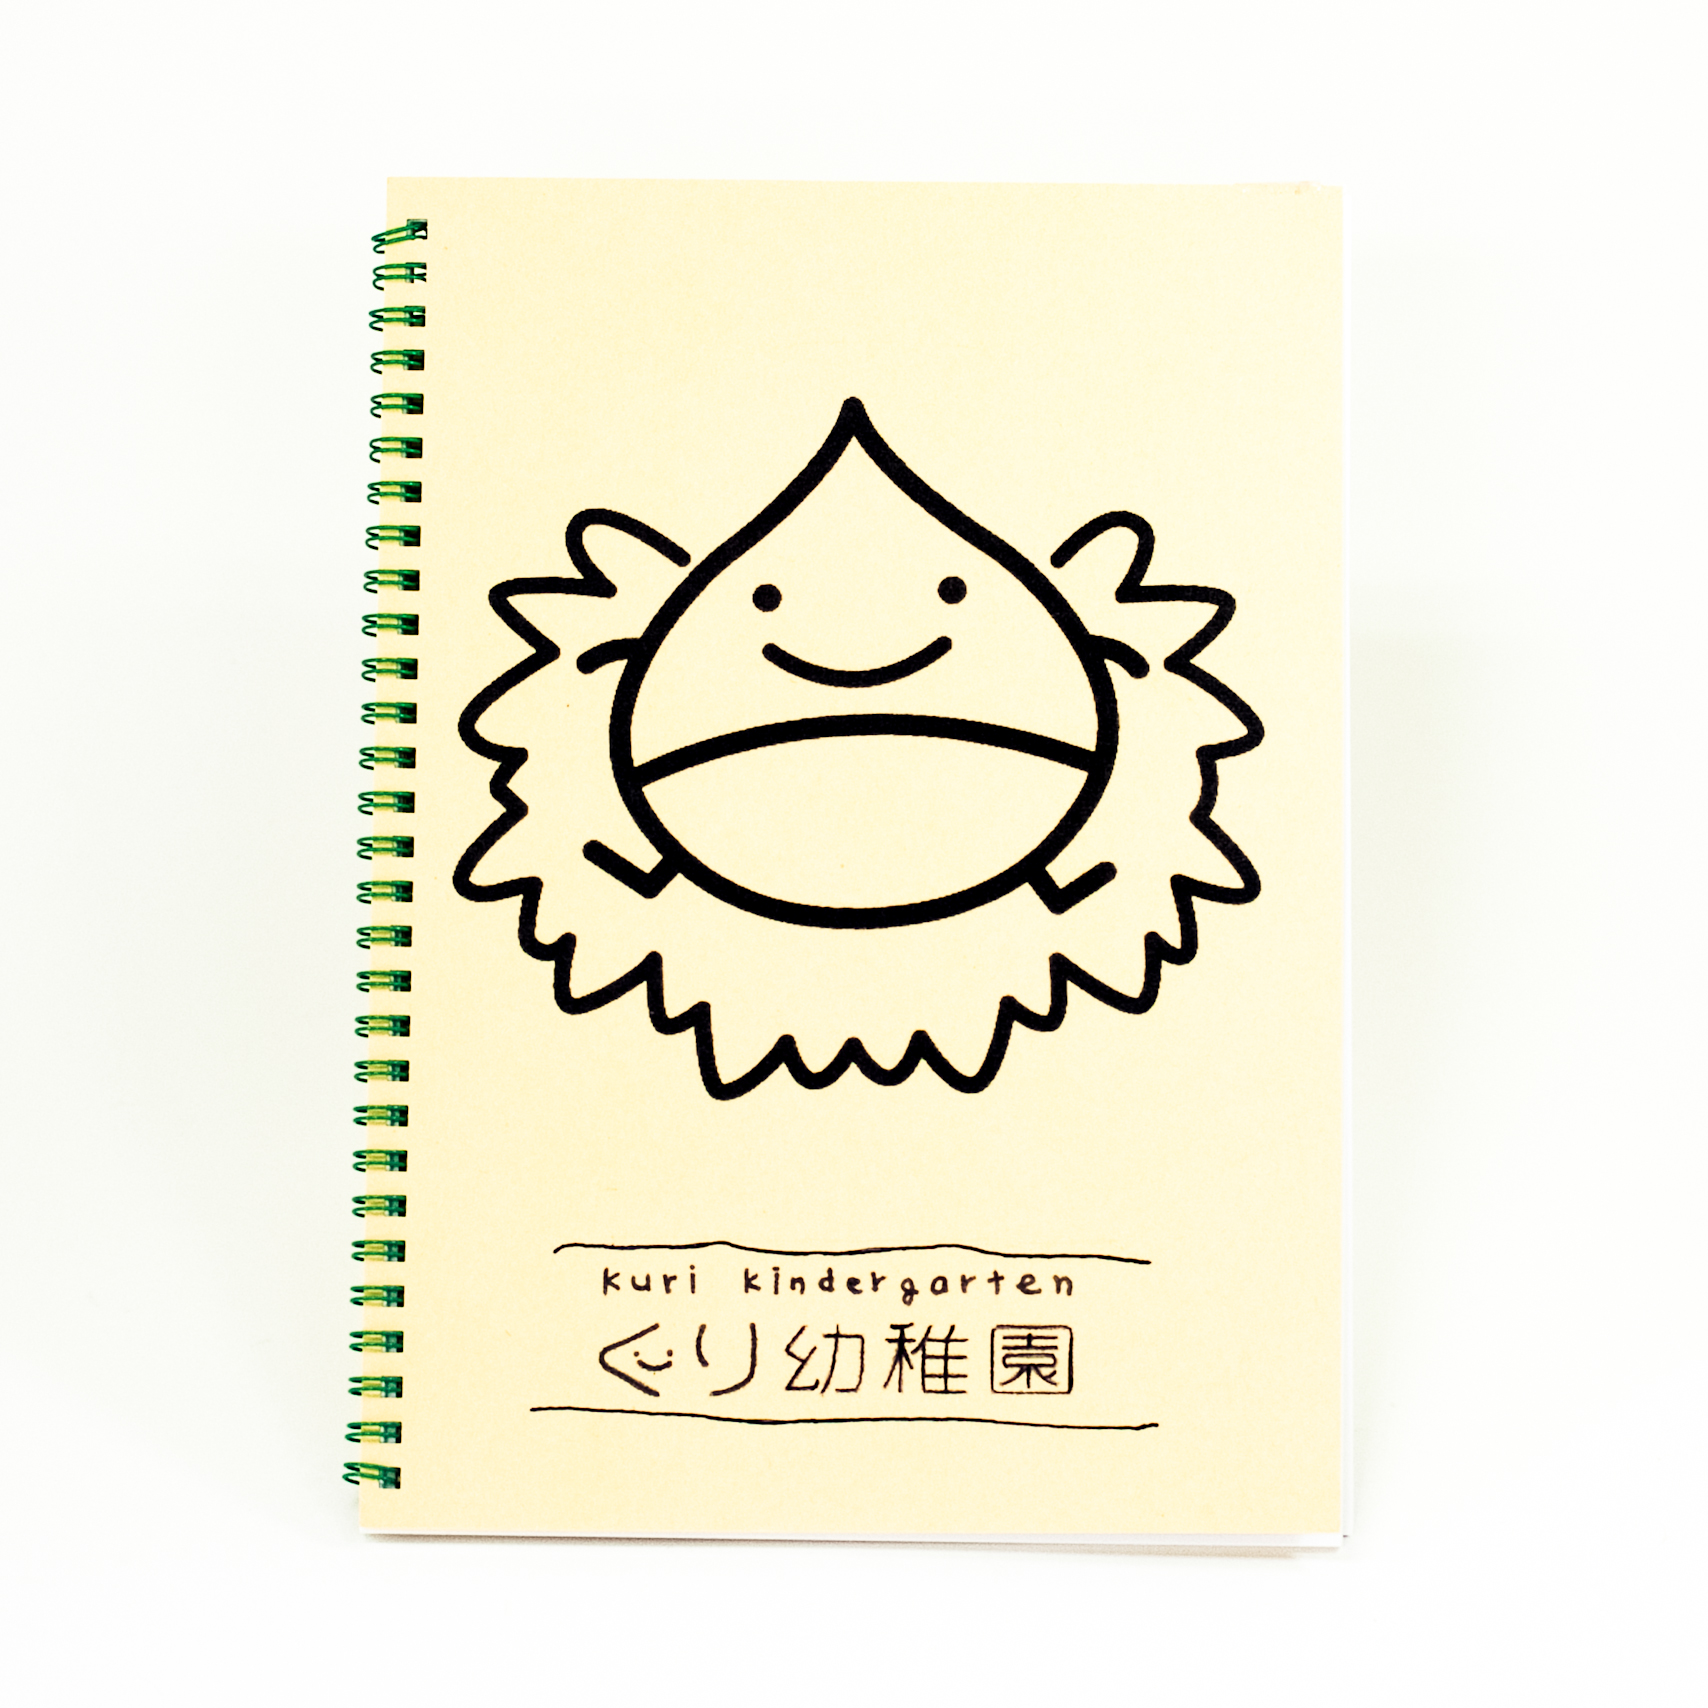 「三浦 様」製作のオリジナルノート